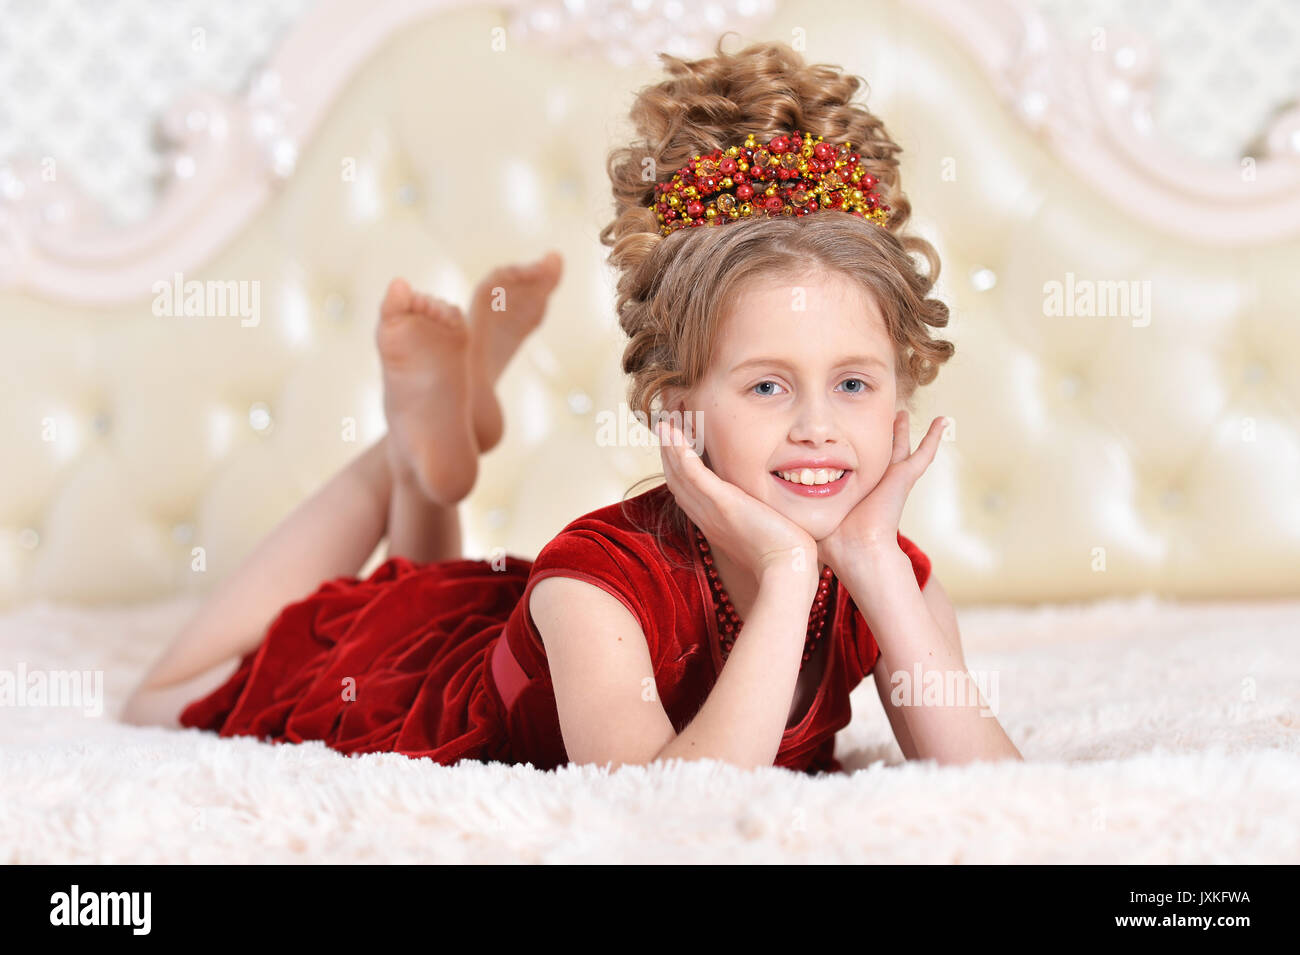 little girl in red velvet dress  Stock Photo